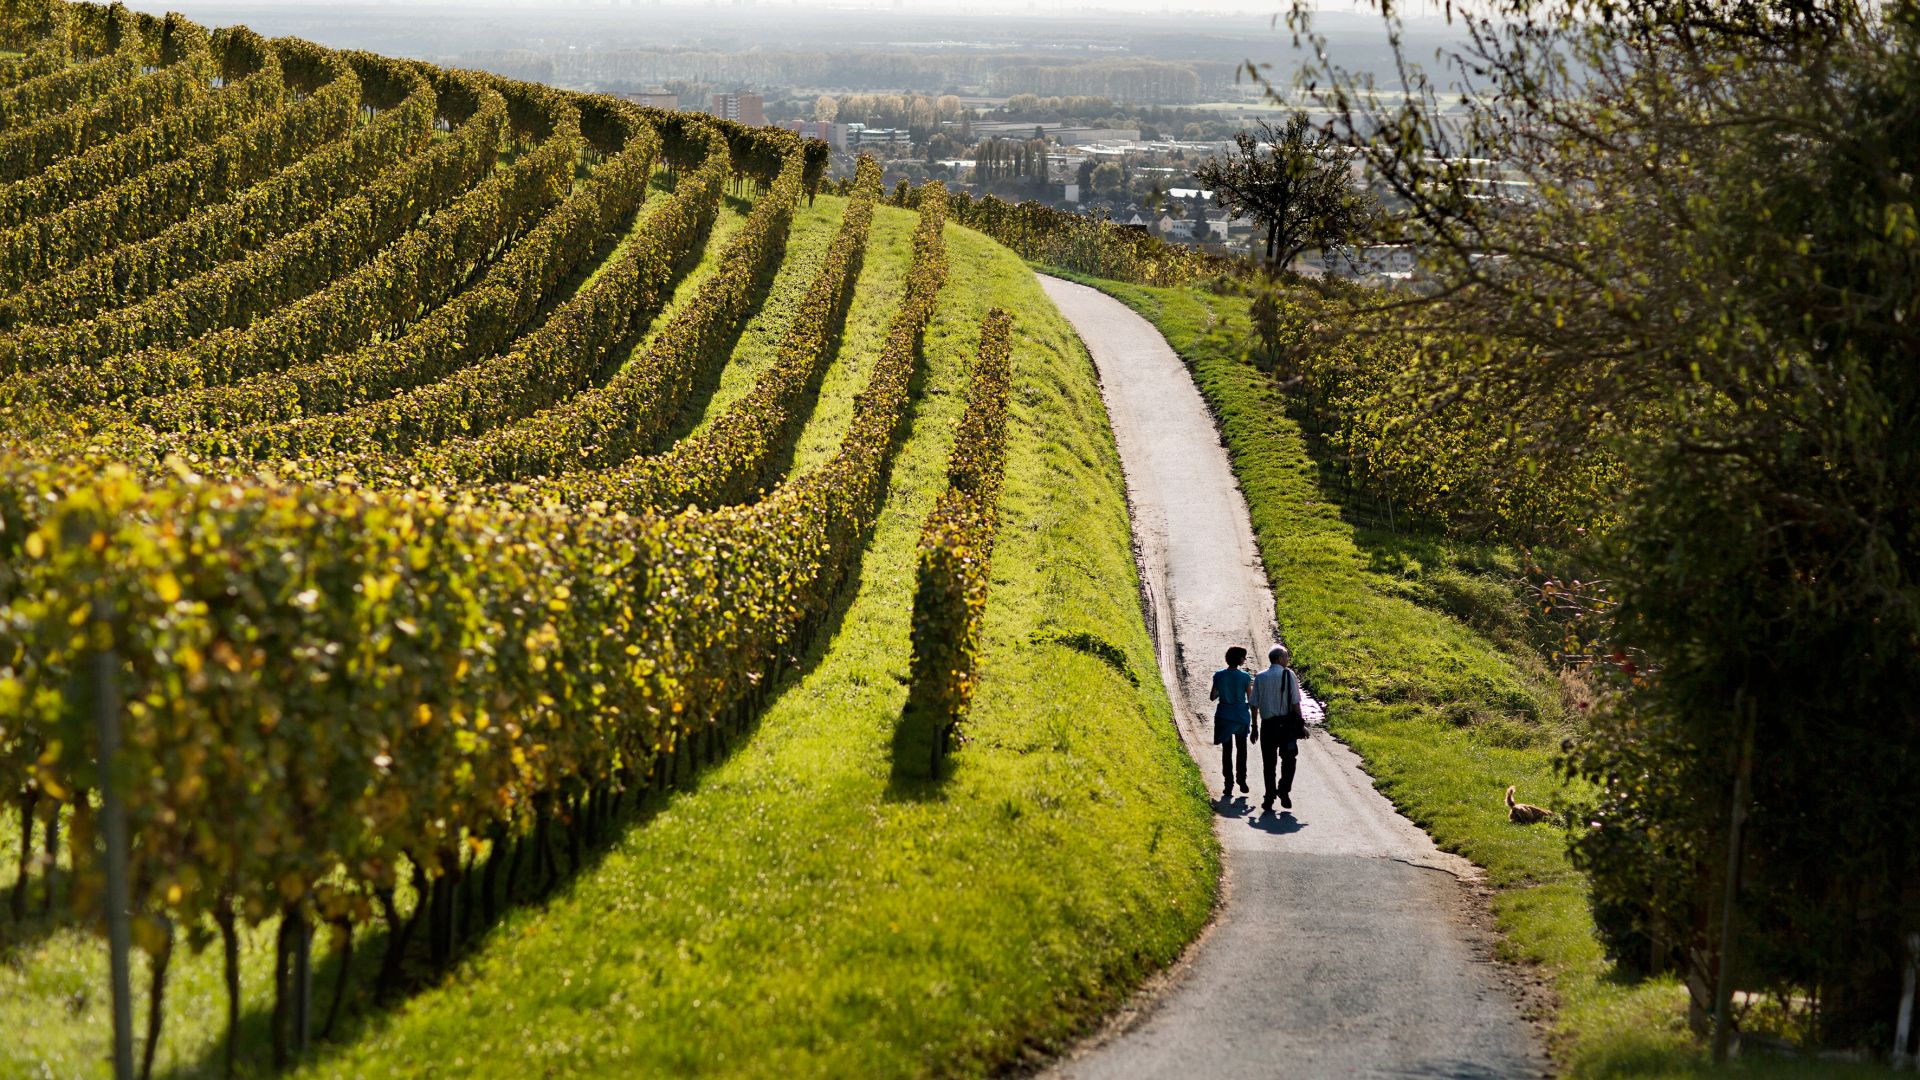 Bernsheim-Auerbach: Walking in the wine-growing area Hessische Bergstrasse